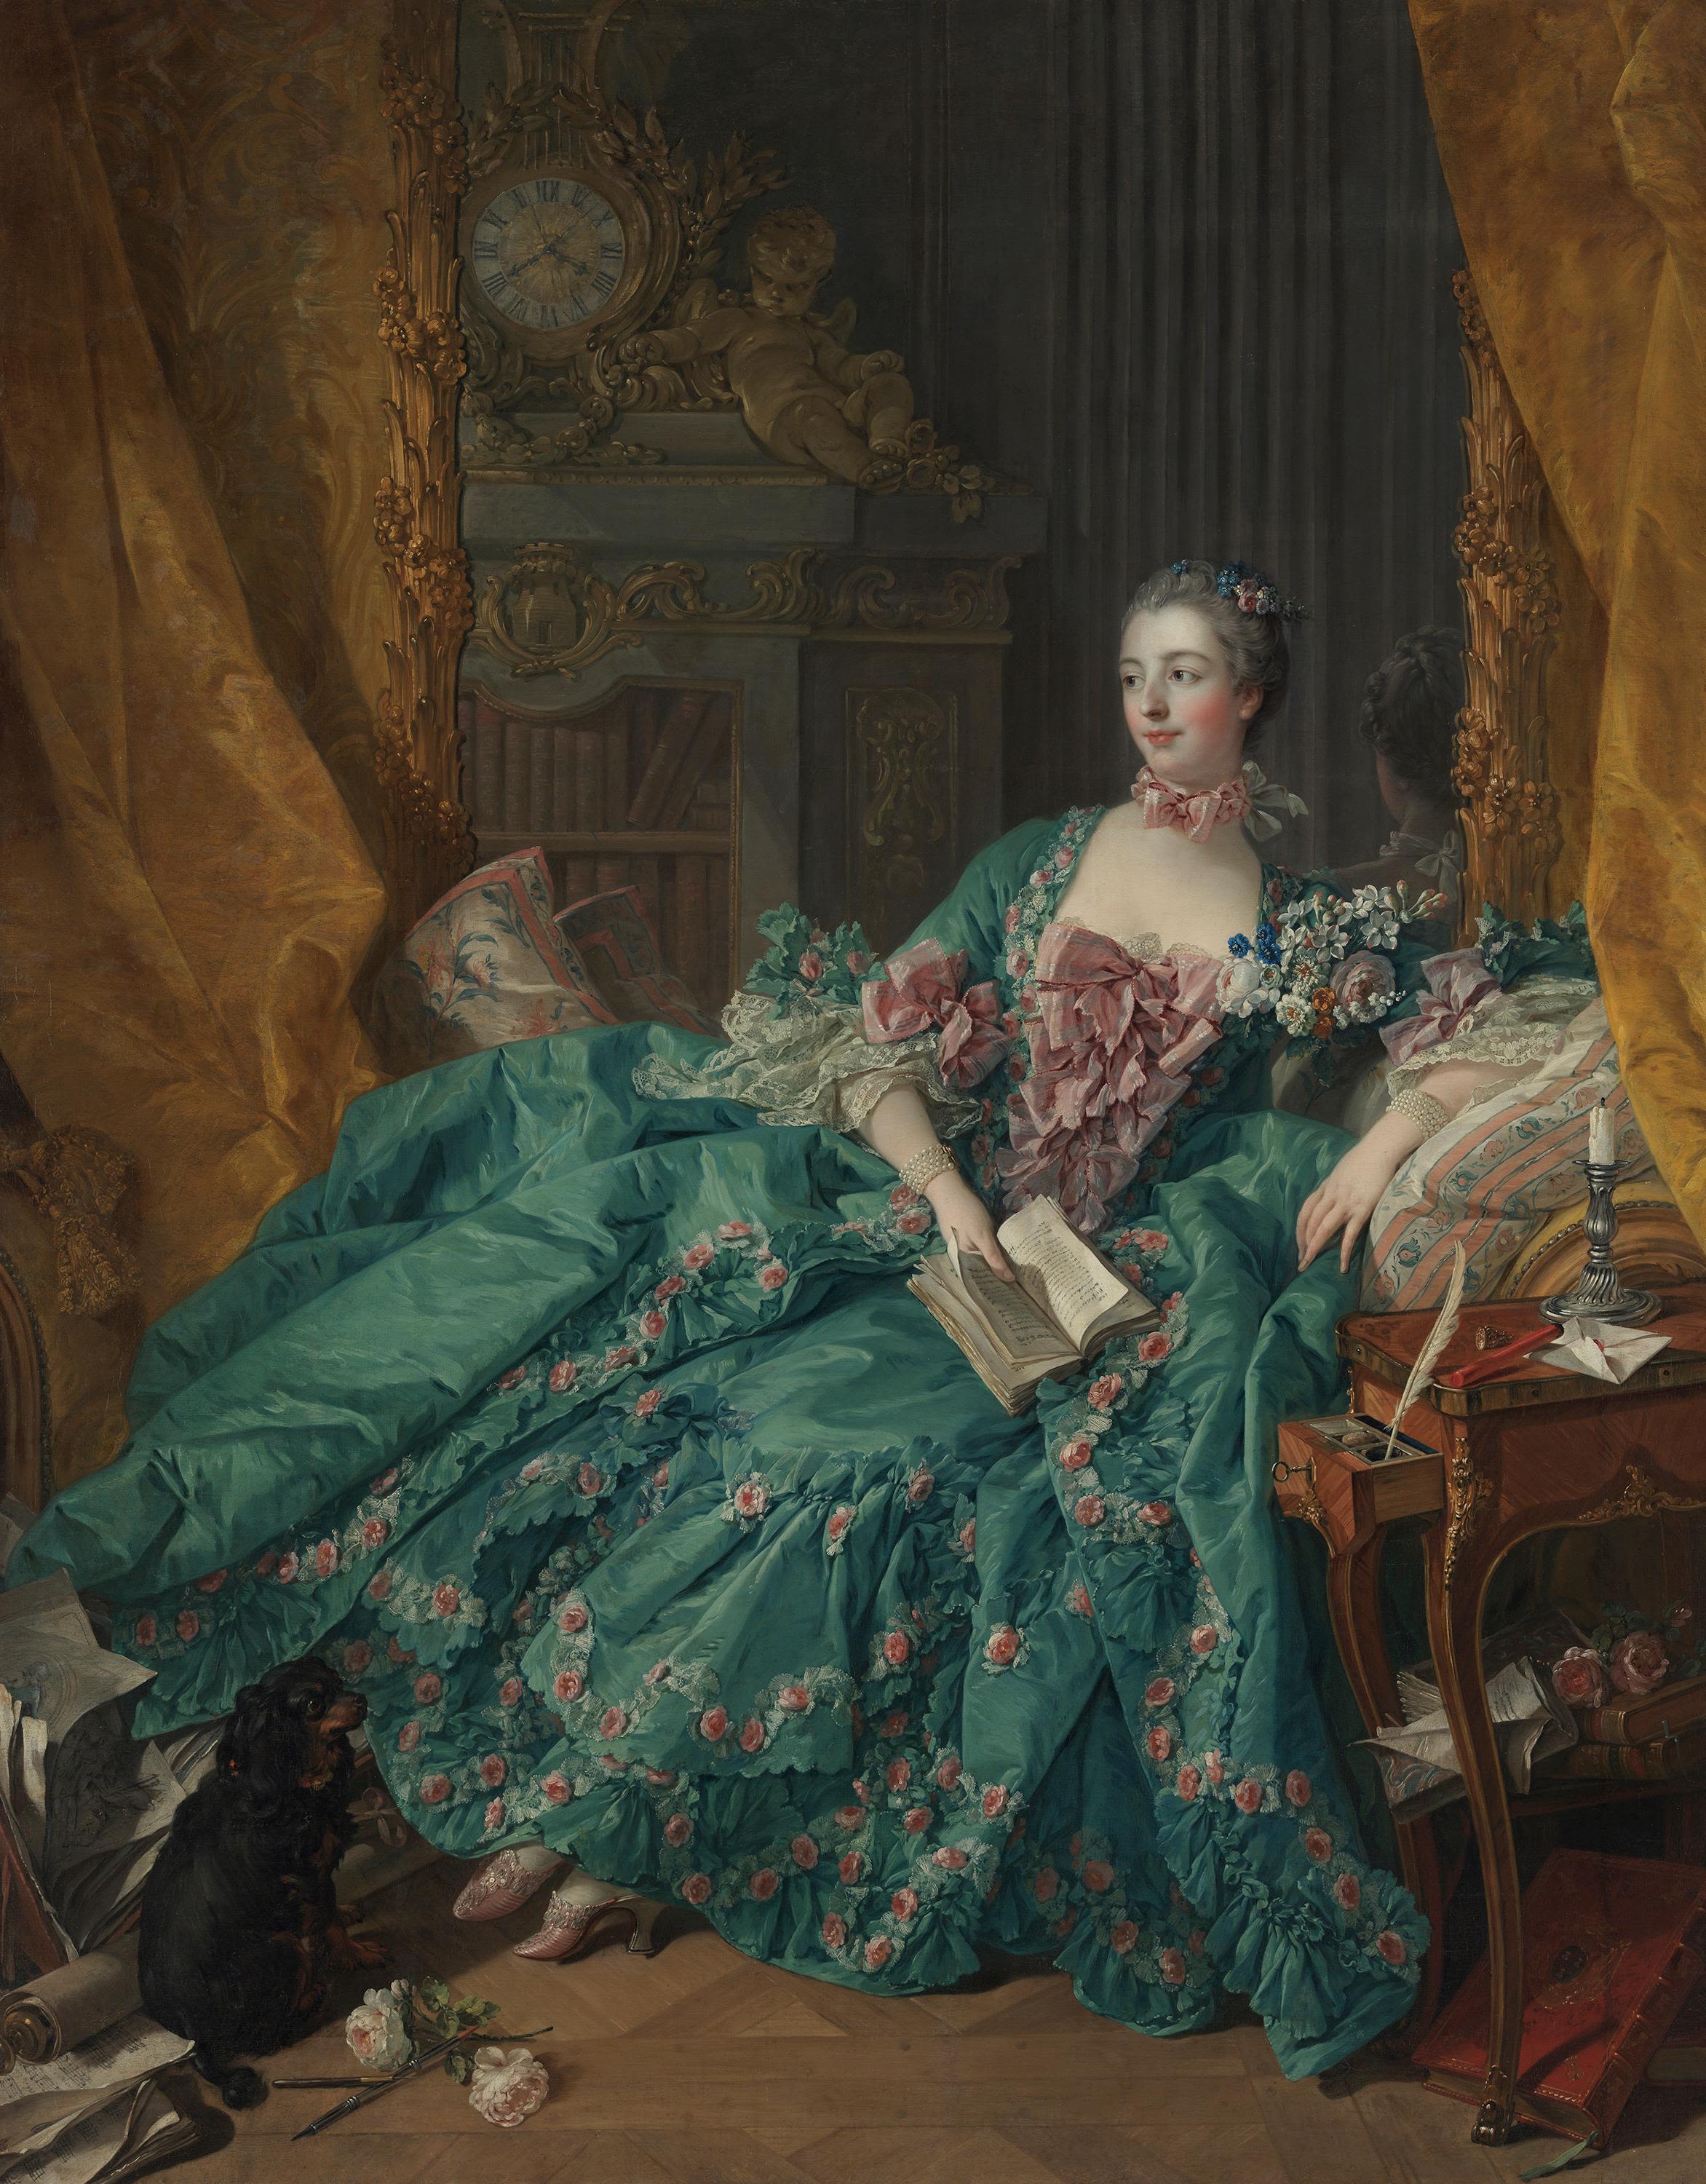 Madame de Pompadour by Francois Boucher - 1756 - 201 x 157 cm Alte Pinakothek